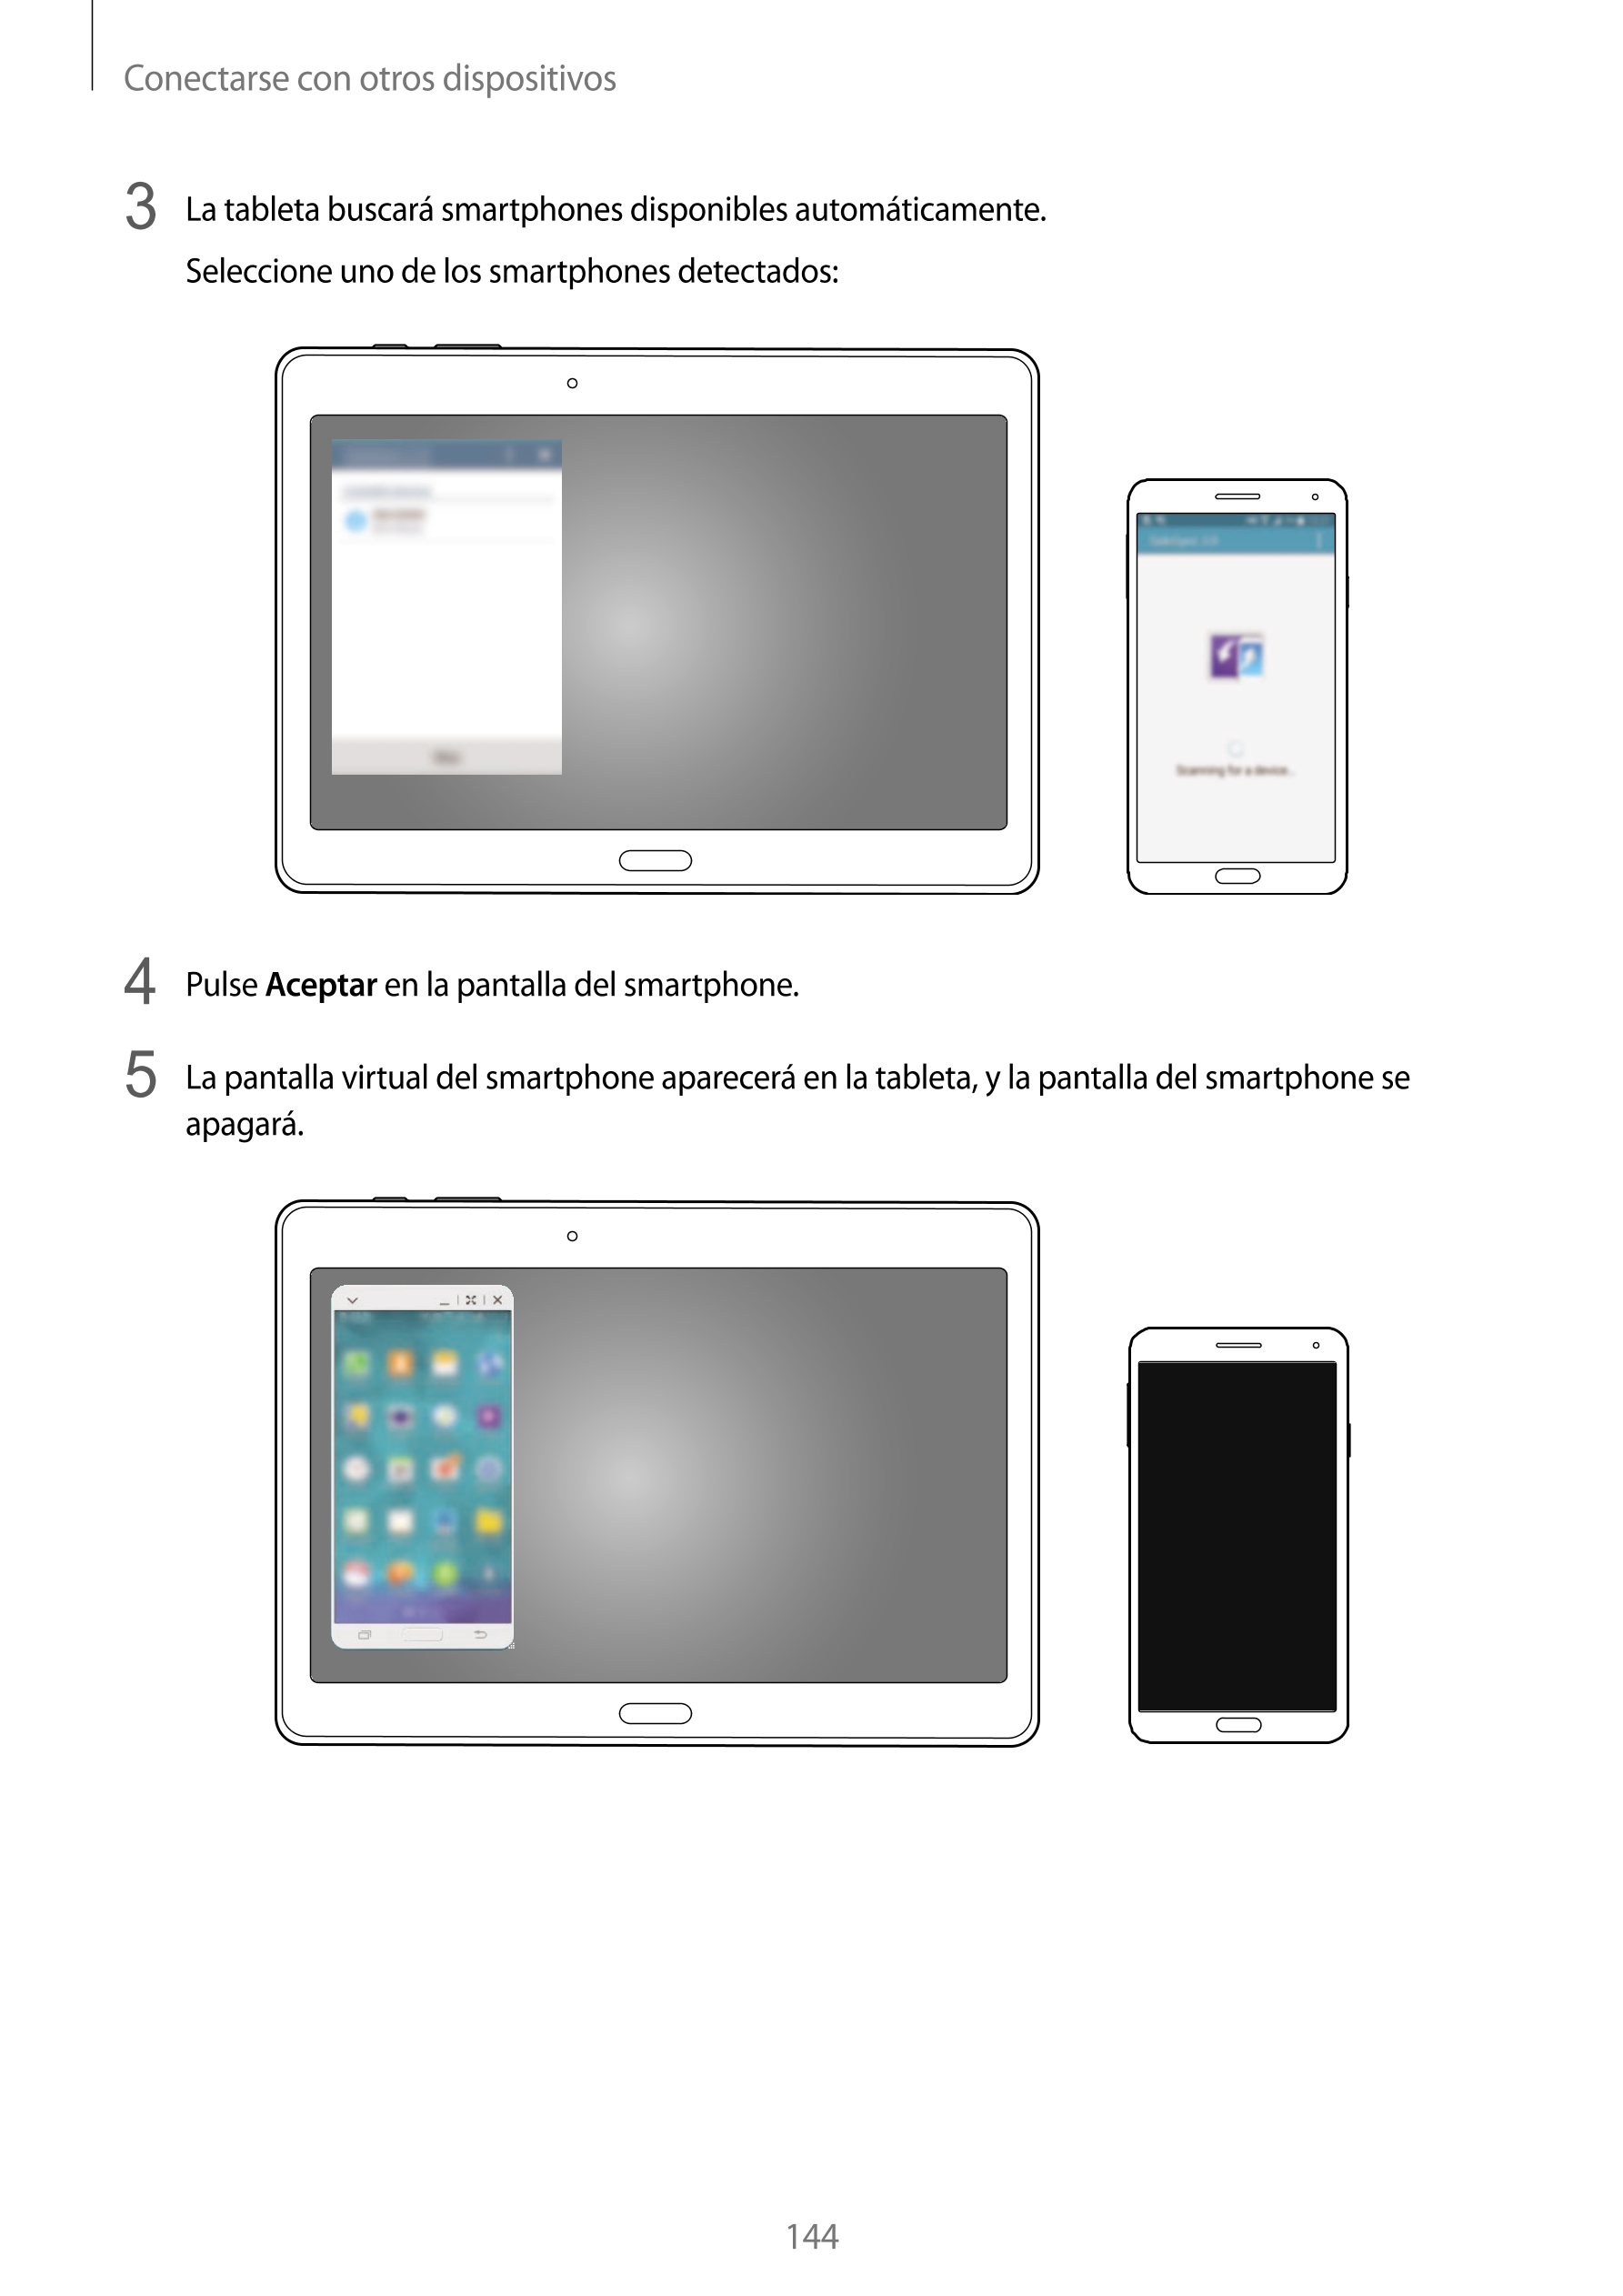 Conectarse con otros dispositivos
3  La tableta buscará smartphones disponibles automáticamente.
Seleccione uno de los smartphon